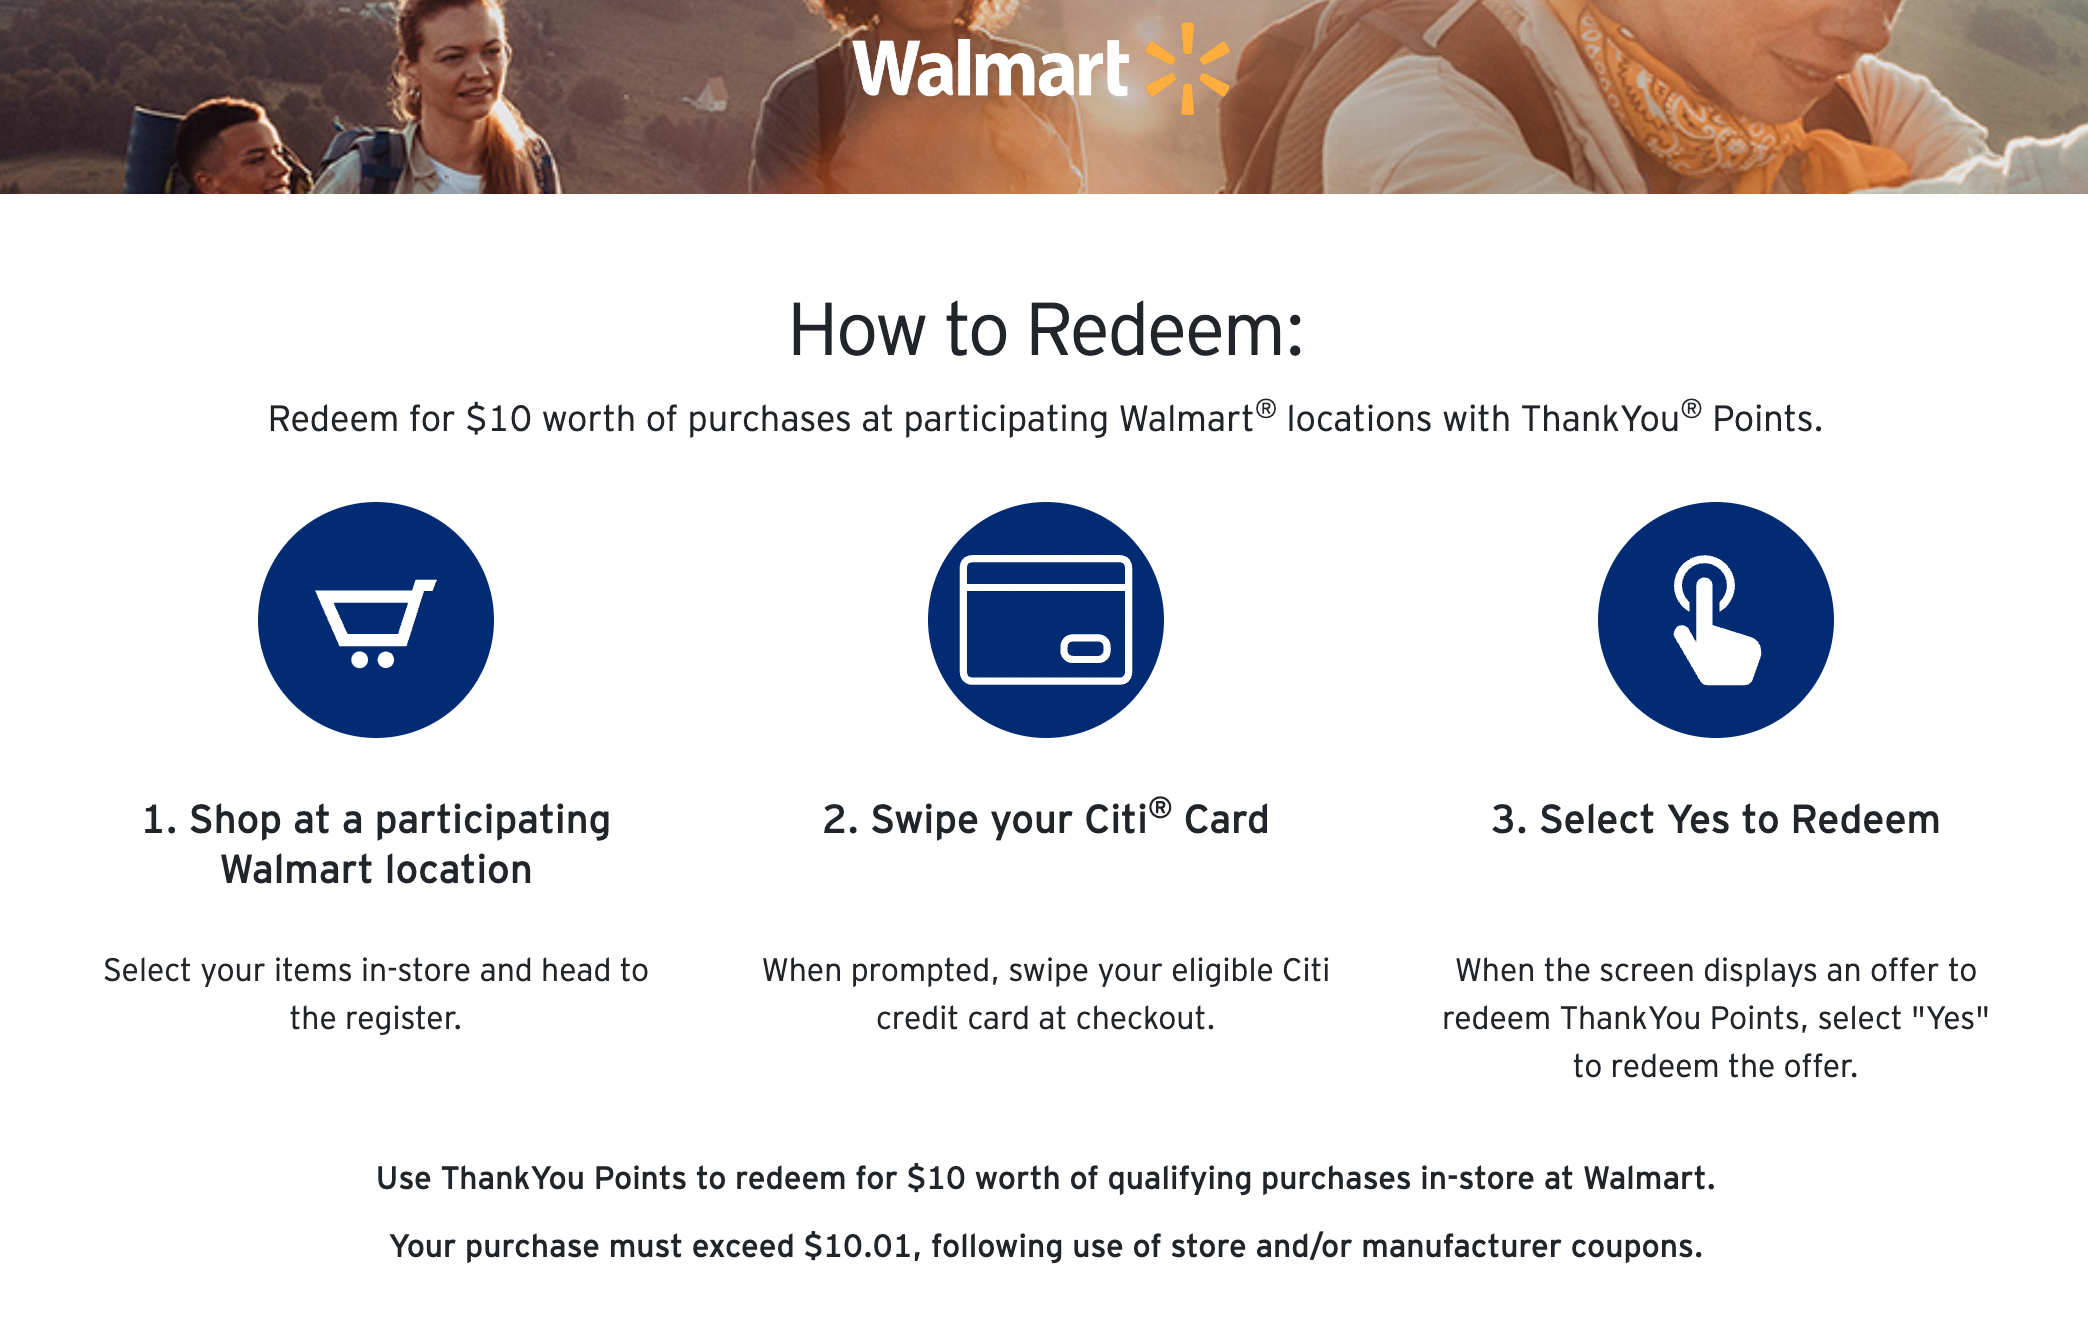 Redeeming ThankYou points at Walmart